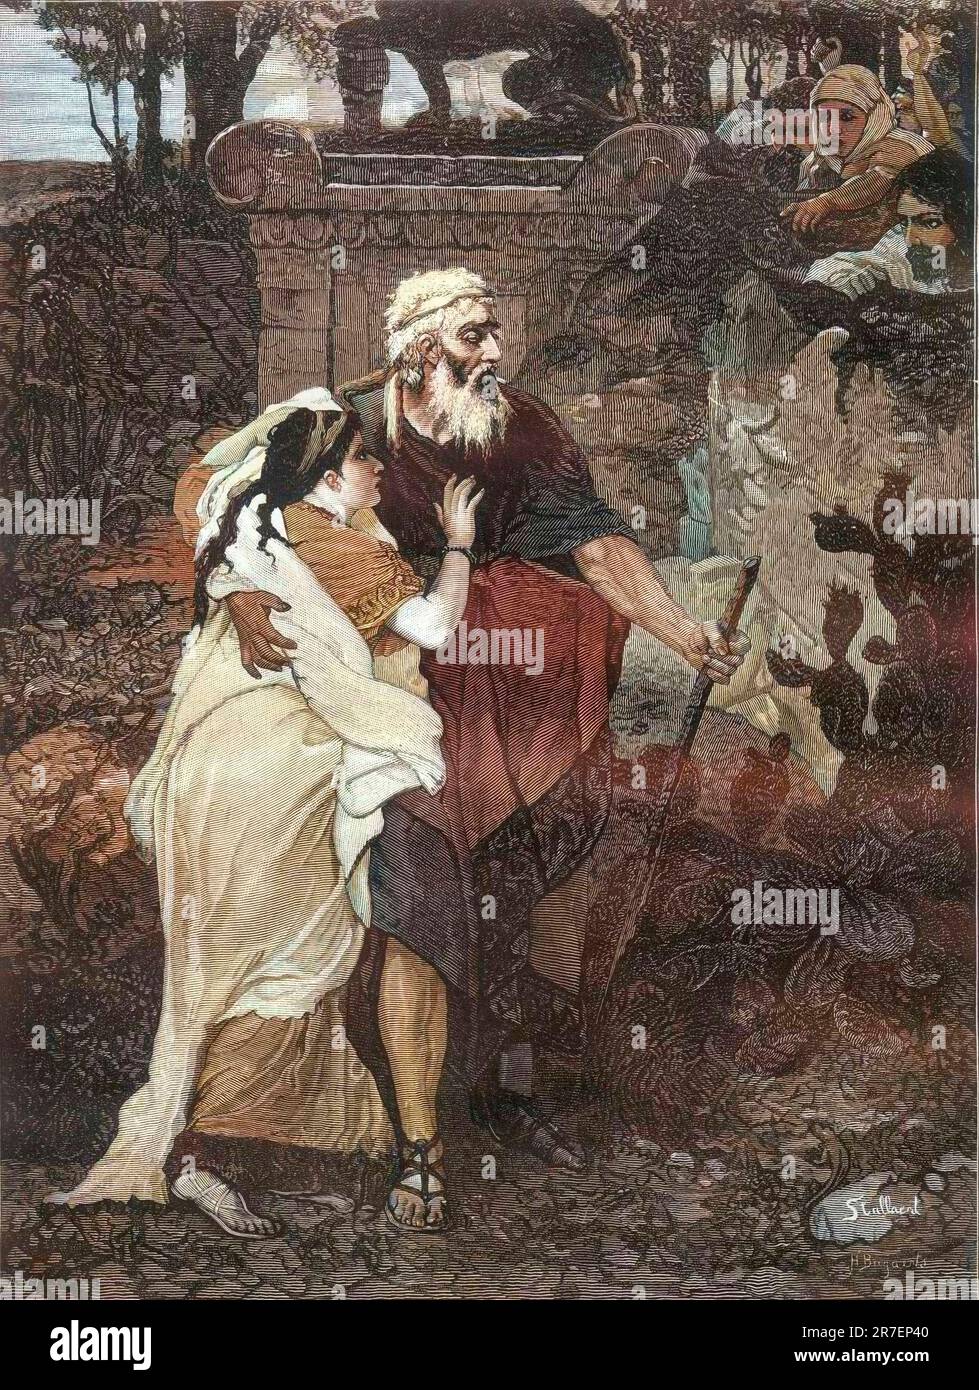 Oedipe et Antigone - la jeune fille aide son vieux pere aveugle a marcher gravure d'apres la peinture de Josephe Stallaert - (il re di Tebe Oedipus con la figlia Antigone) Foto Stock